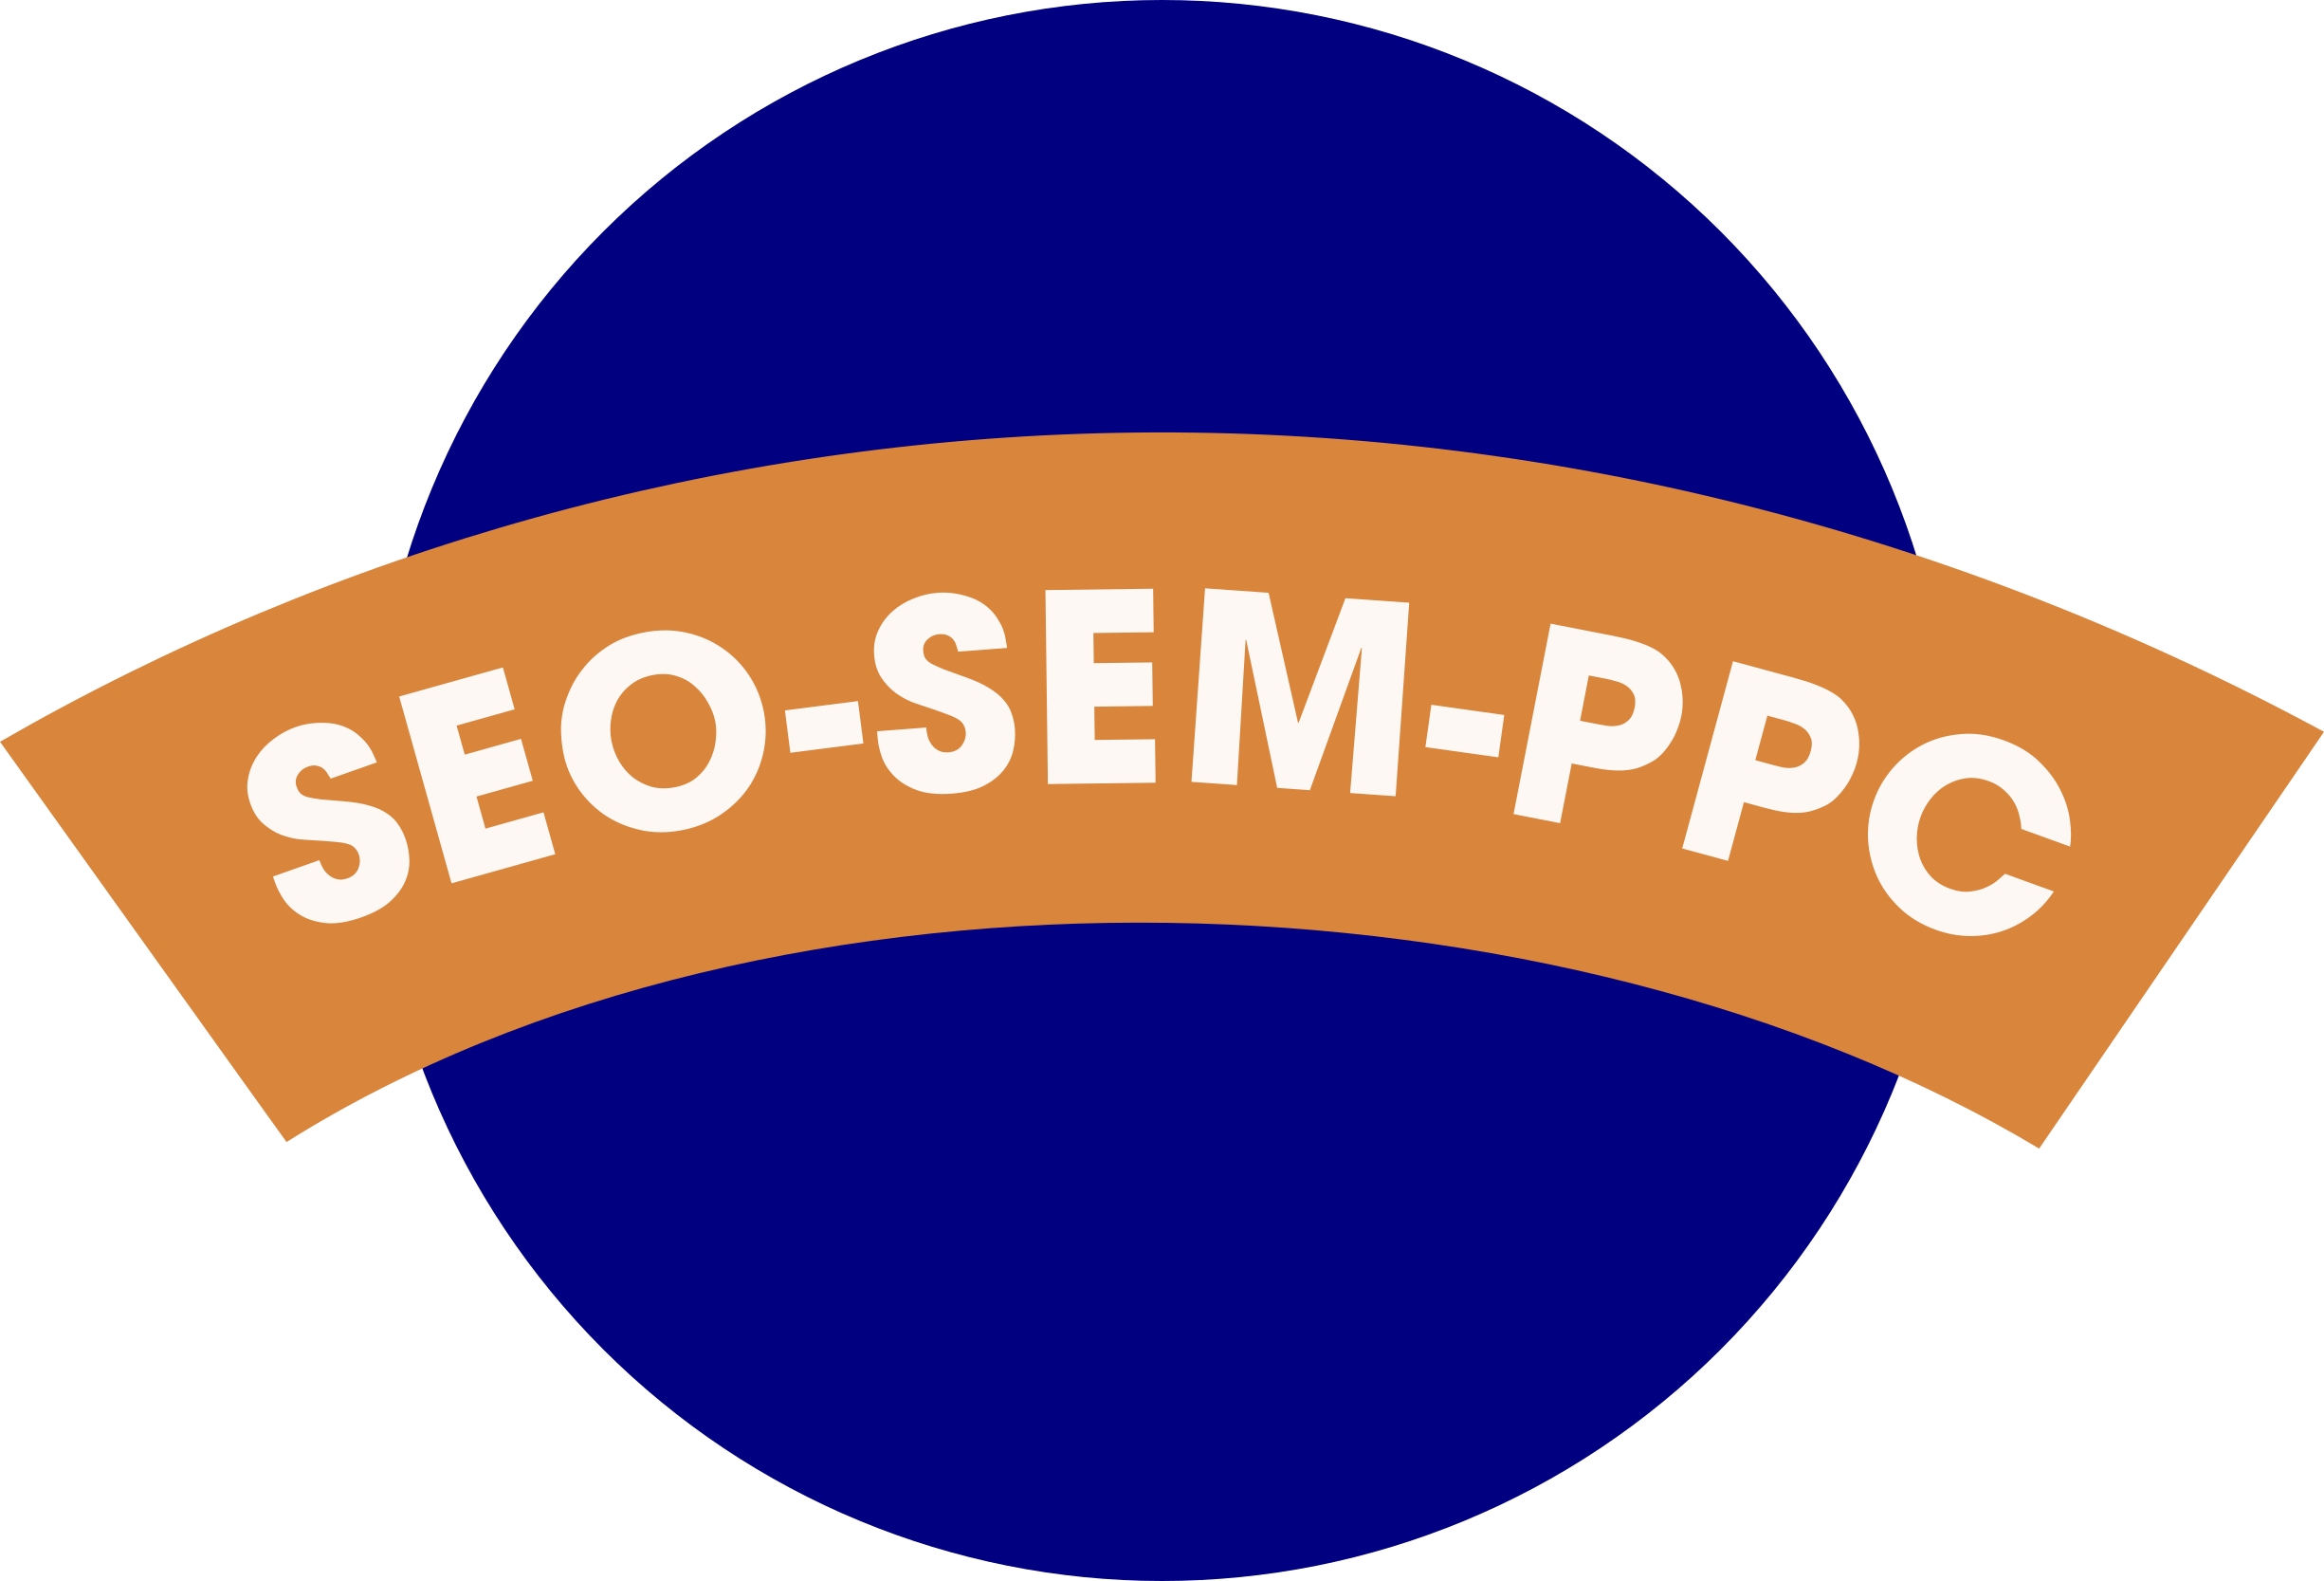 seo-sem-ppc markeitng logo